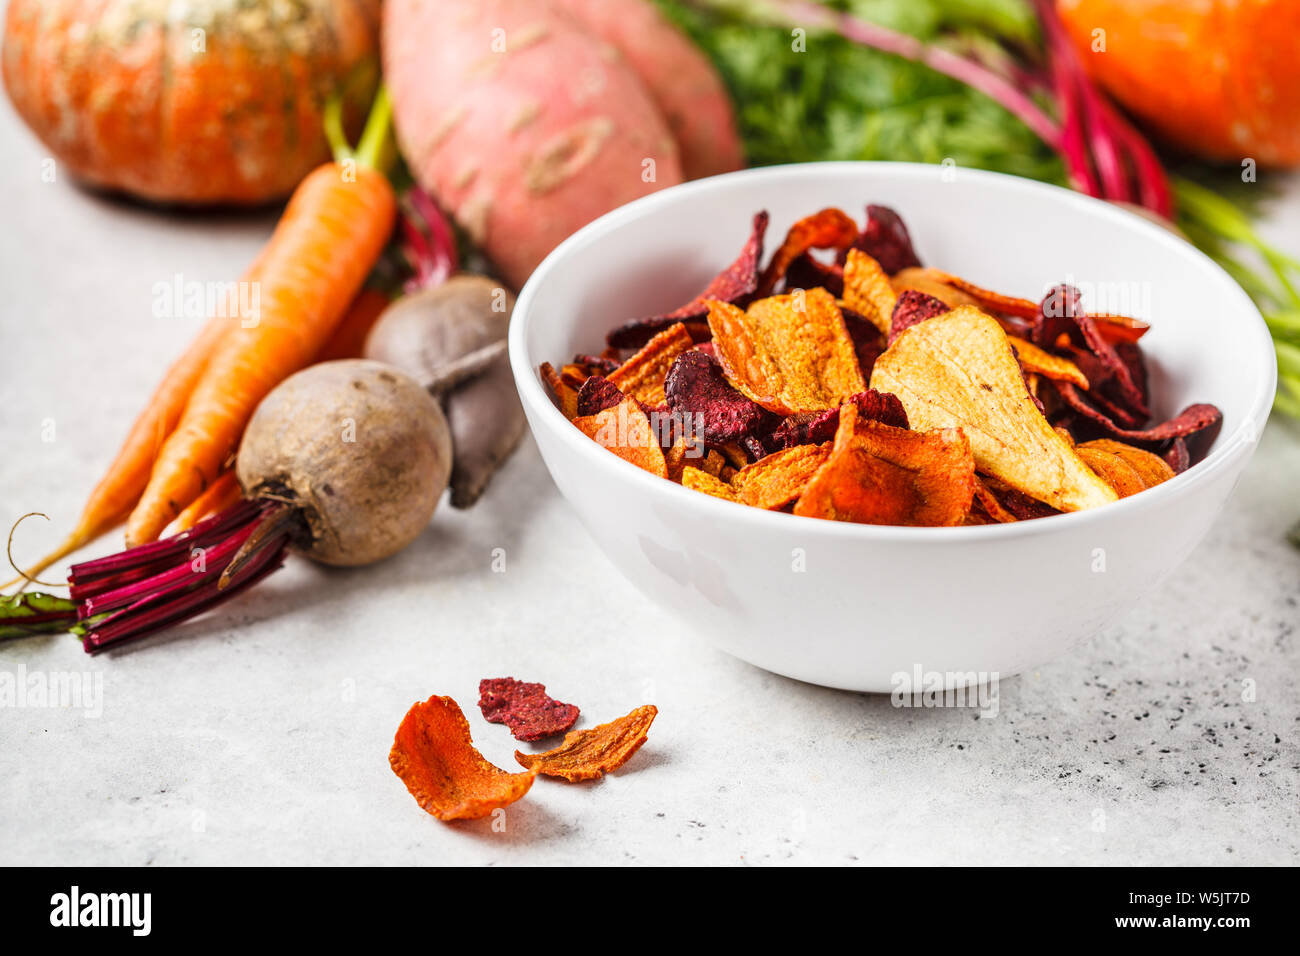 Schüssel gesunde Gemüse Chips aus Rüben, süsse Kartoffeln und Karotten mit Zutaten auf einem weißen Hintergrund. Stockfoto